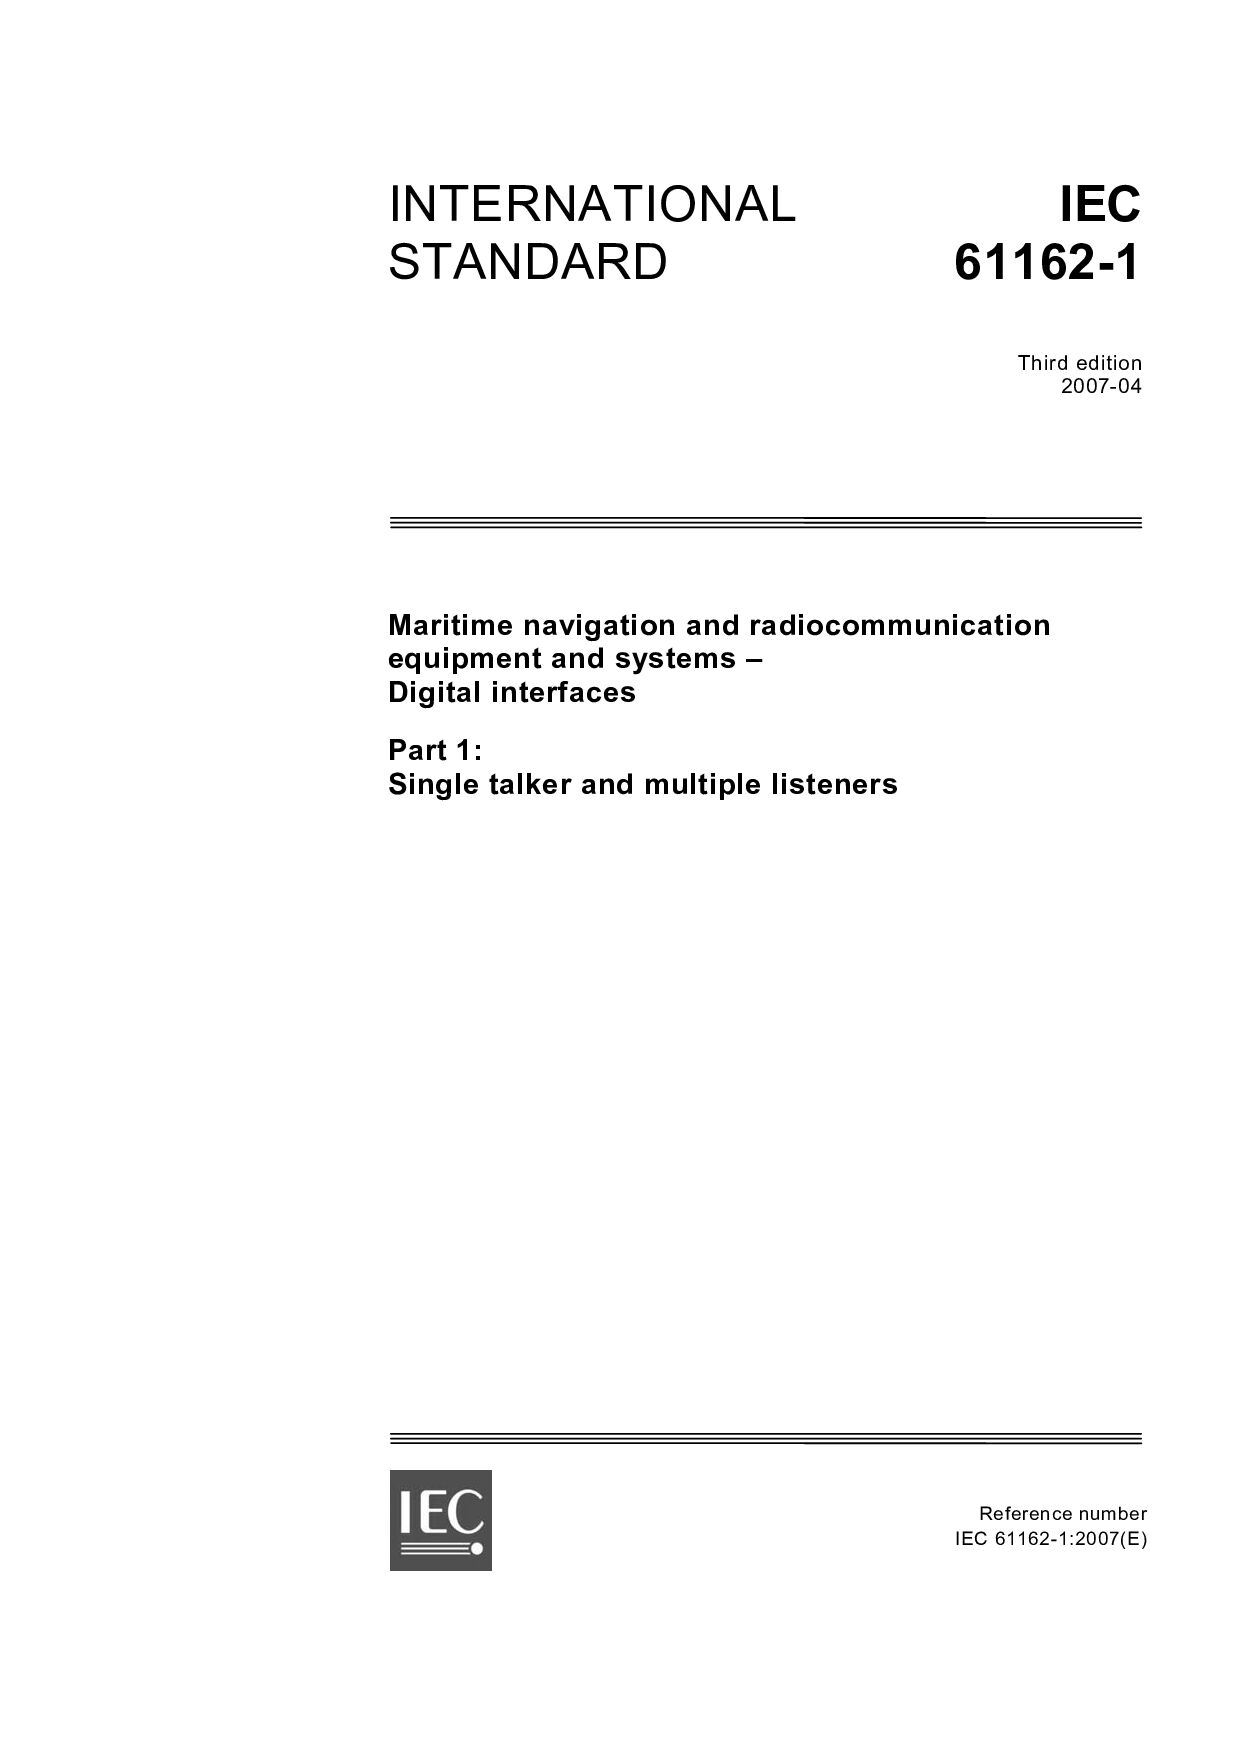 IEC 61162-1-2007